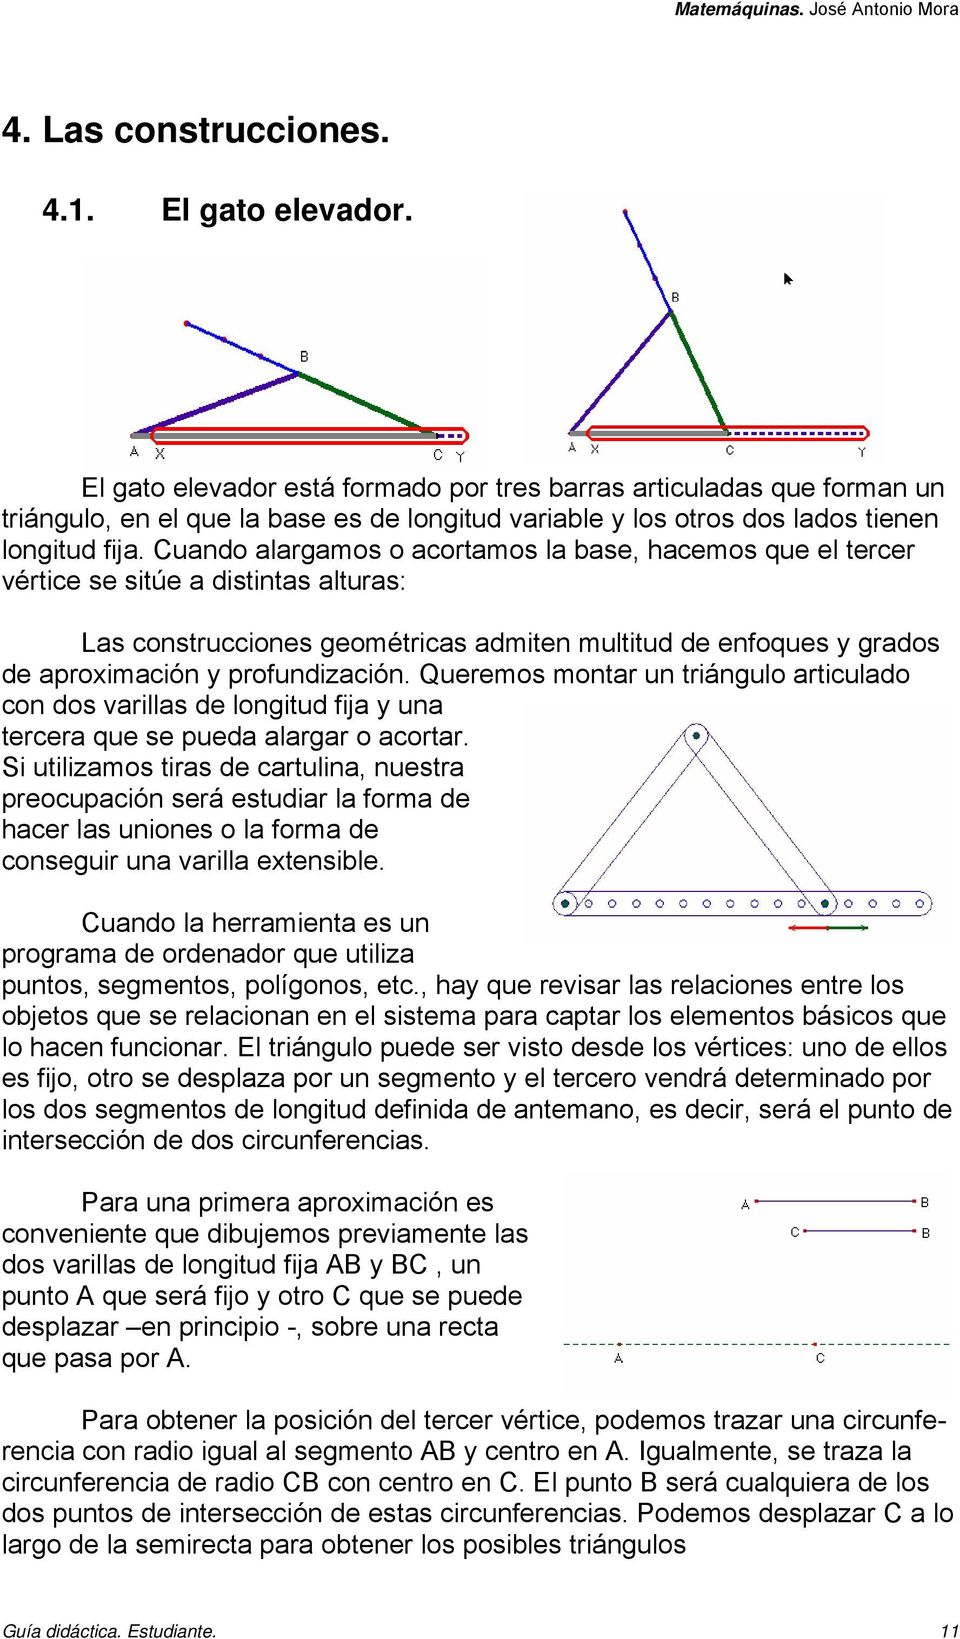 Cuando alargamos o acortamos la base, hacemos que el tercer vértice se sitúe a distintas alturas: Las construcciones geométricas admiten multitud de enfoques y grados de aproximación y profundización.